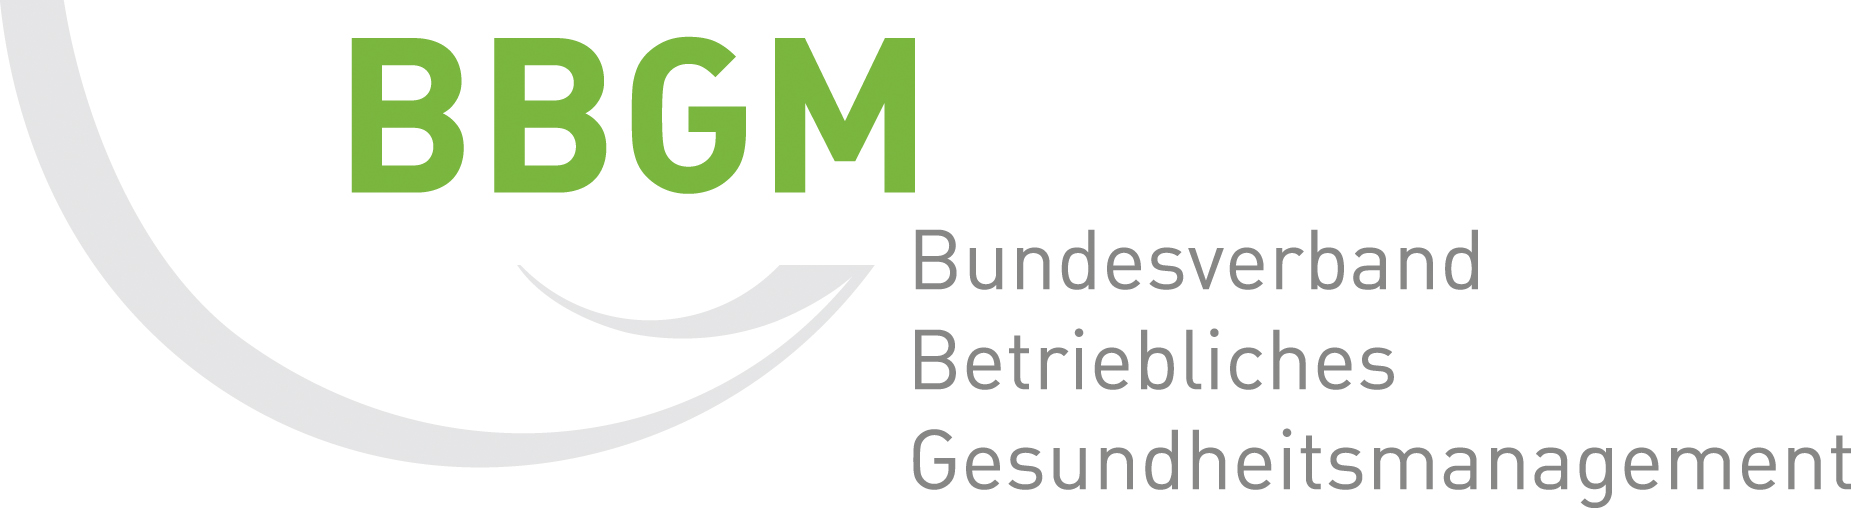 BBGM - Bundesverband Betriebliches Gesundheitsmanagement